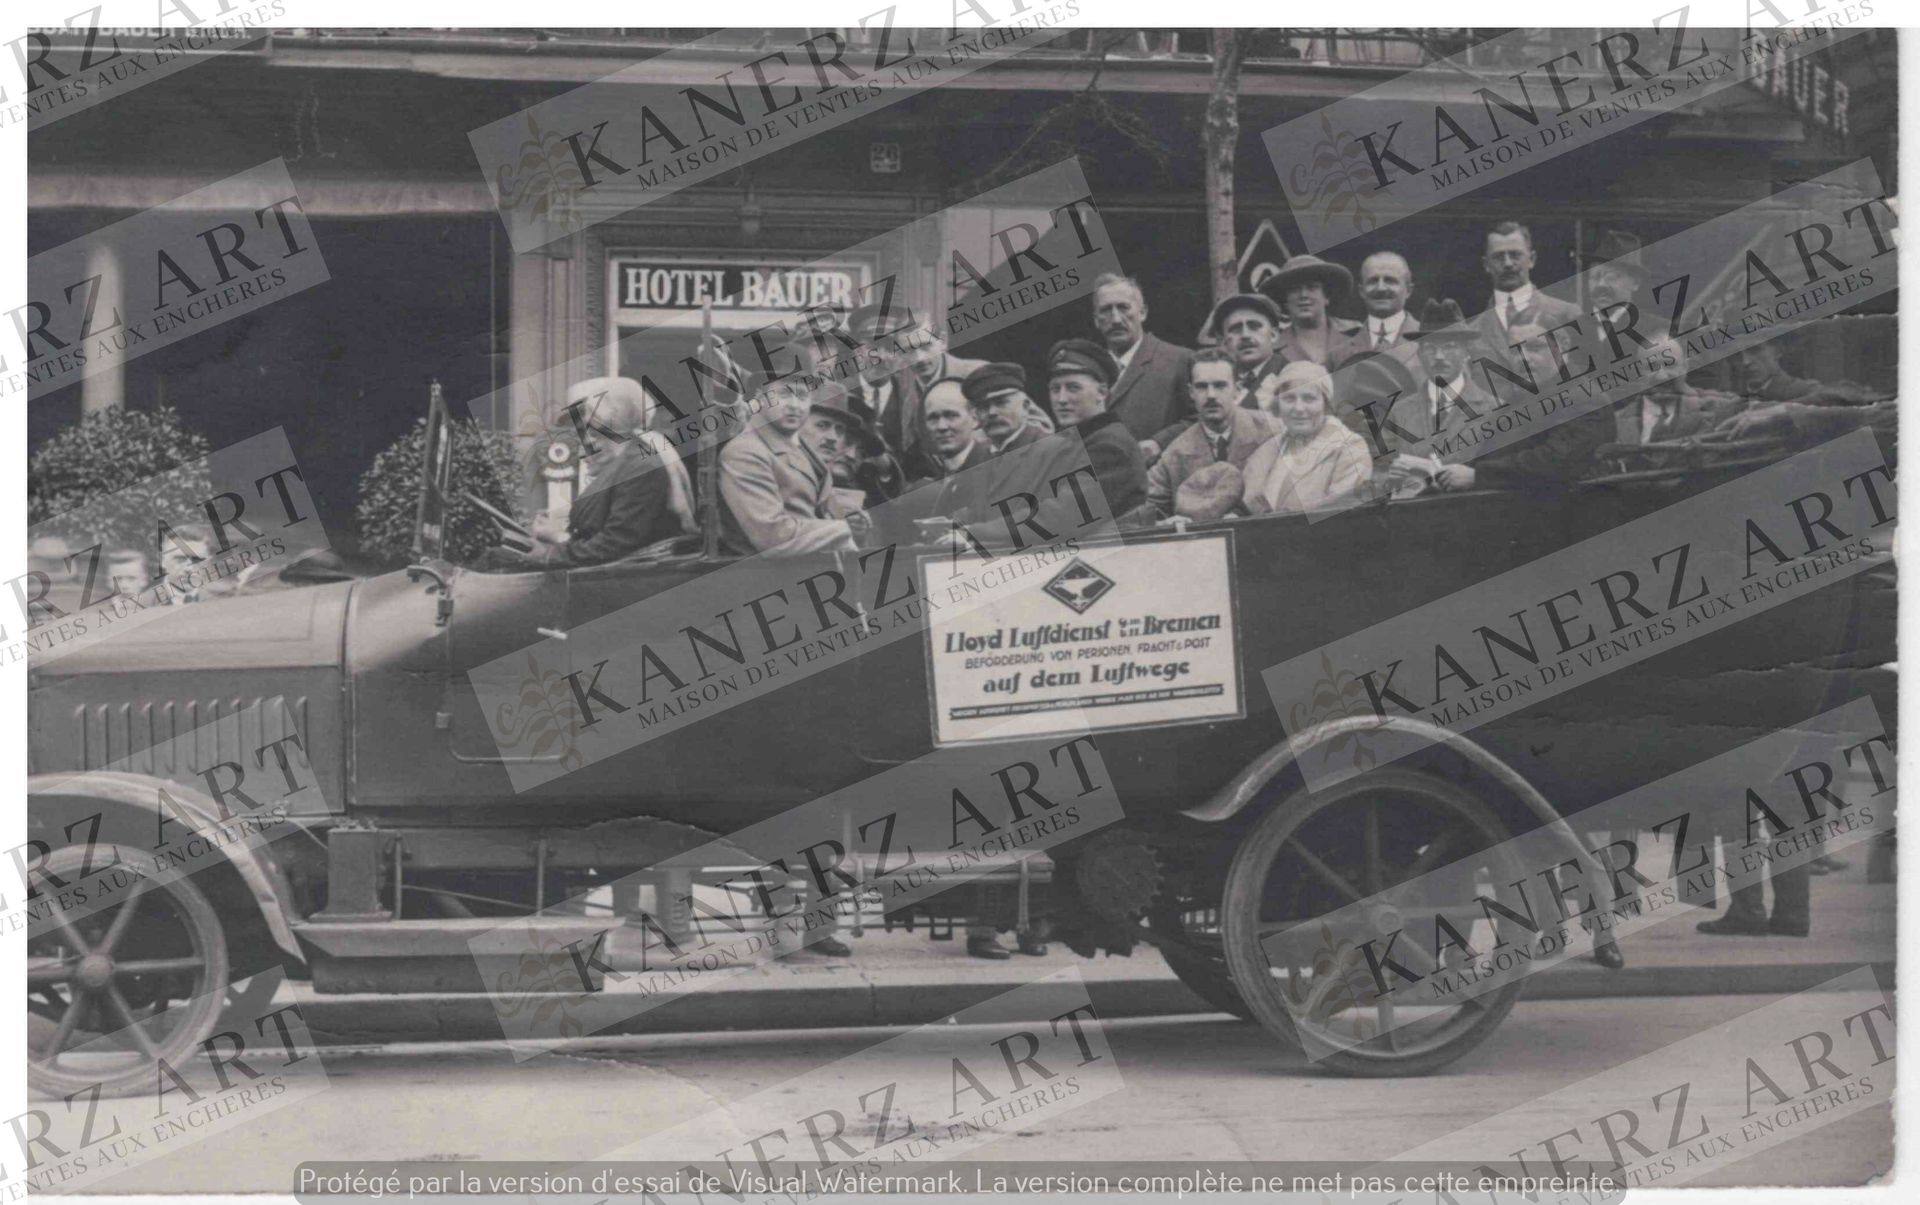 Null (AUTOMOBILE)在Bauer酒店前的照片卡，客运的汽车，约1922年。